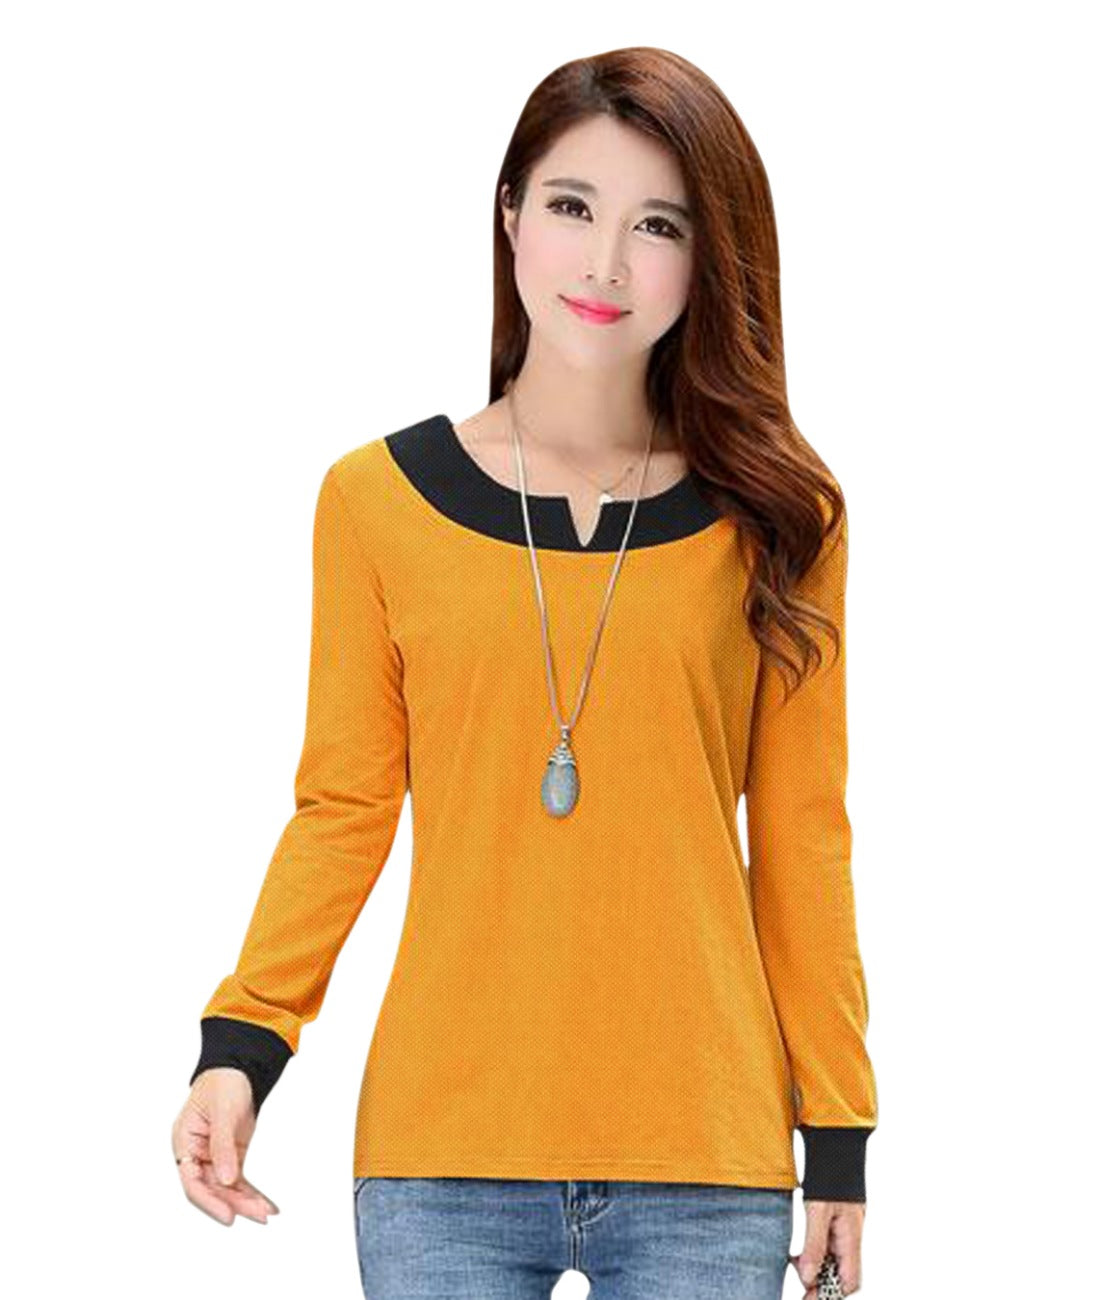 Women's Western Wear Hosiery T Shirts (Yellow) - GillKart